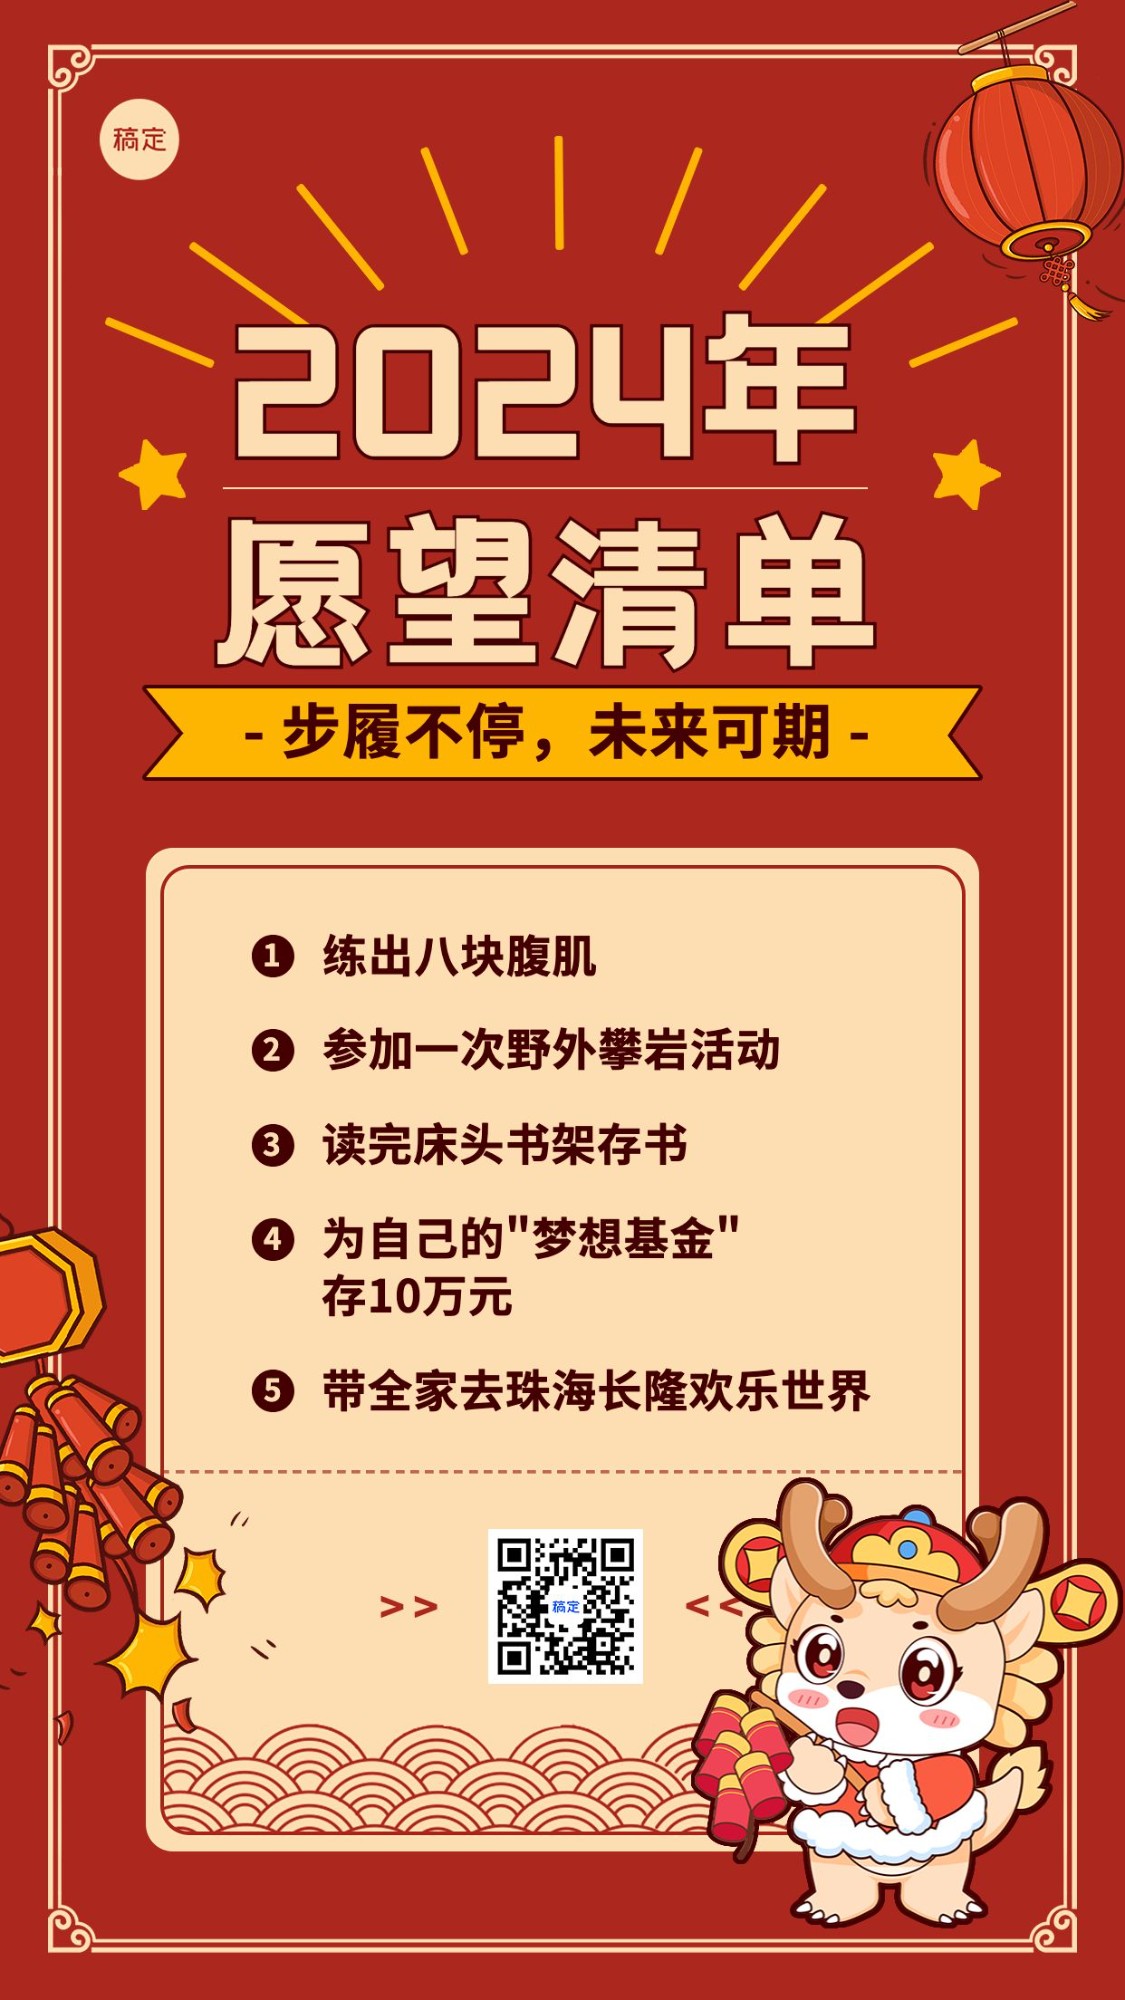 春节新年愿望清单手机海报